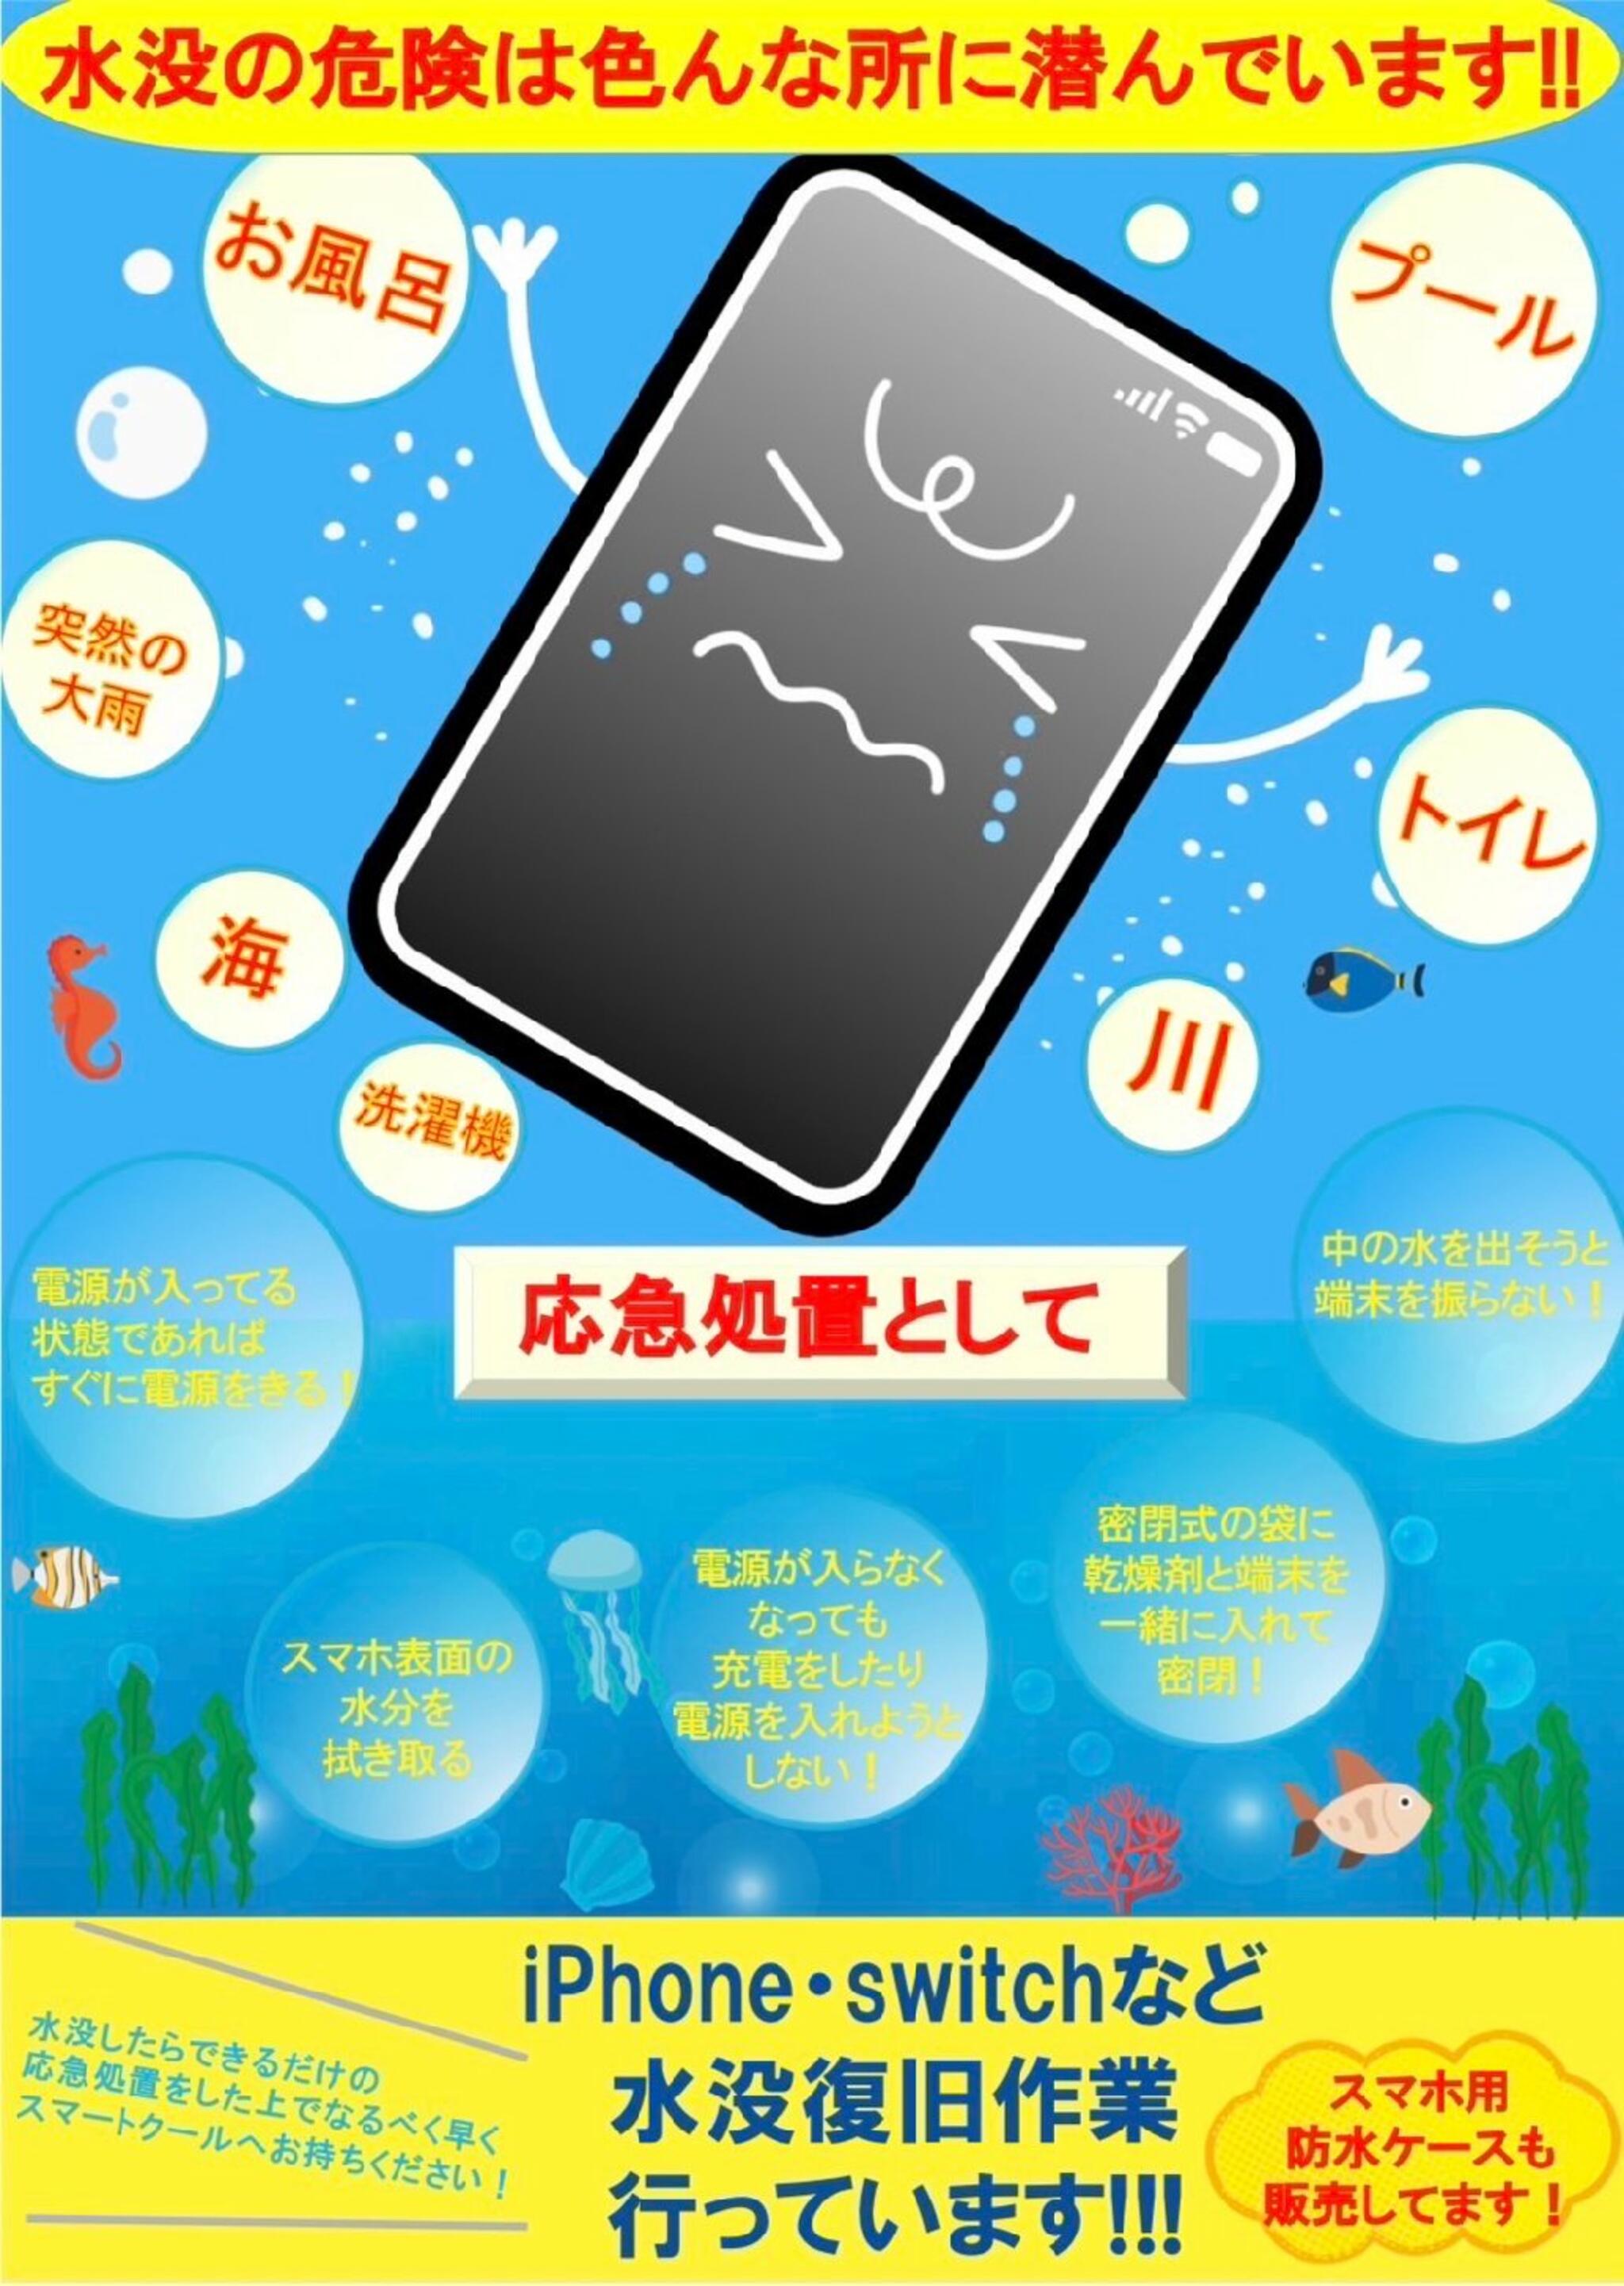 iPhone・iPad・Switch修理店 スマートクール イオンモール広島祇園店からのお知らせ(予期 せぬゲリラ豪雨でiPhoneを濡らさないように注意しましょう！)に関する写真